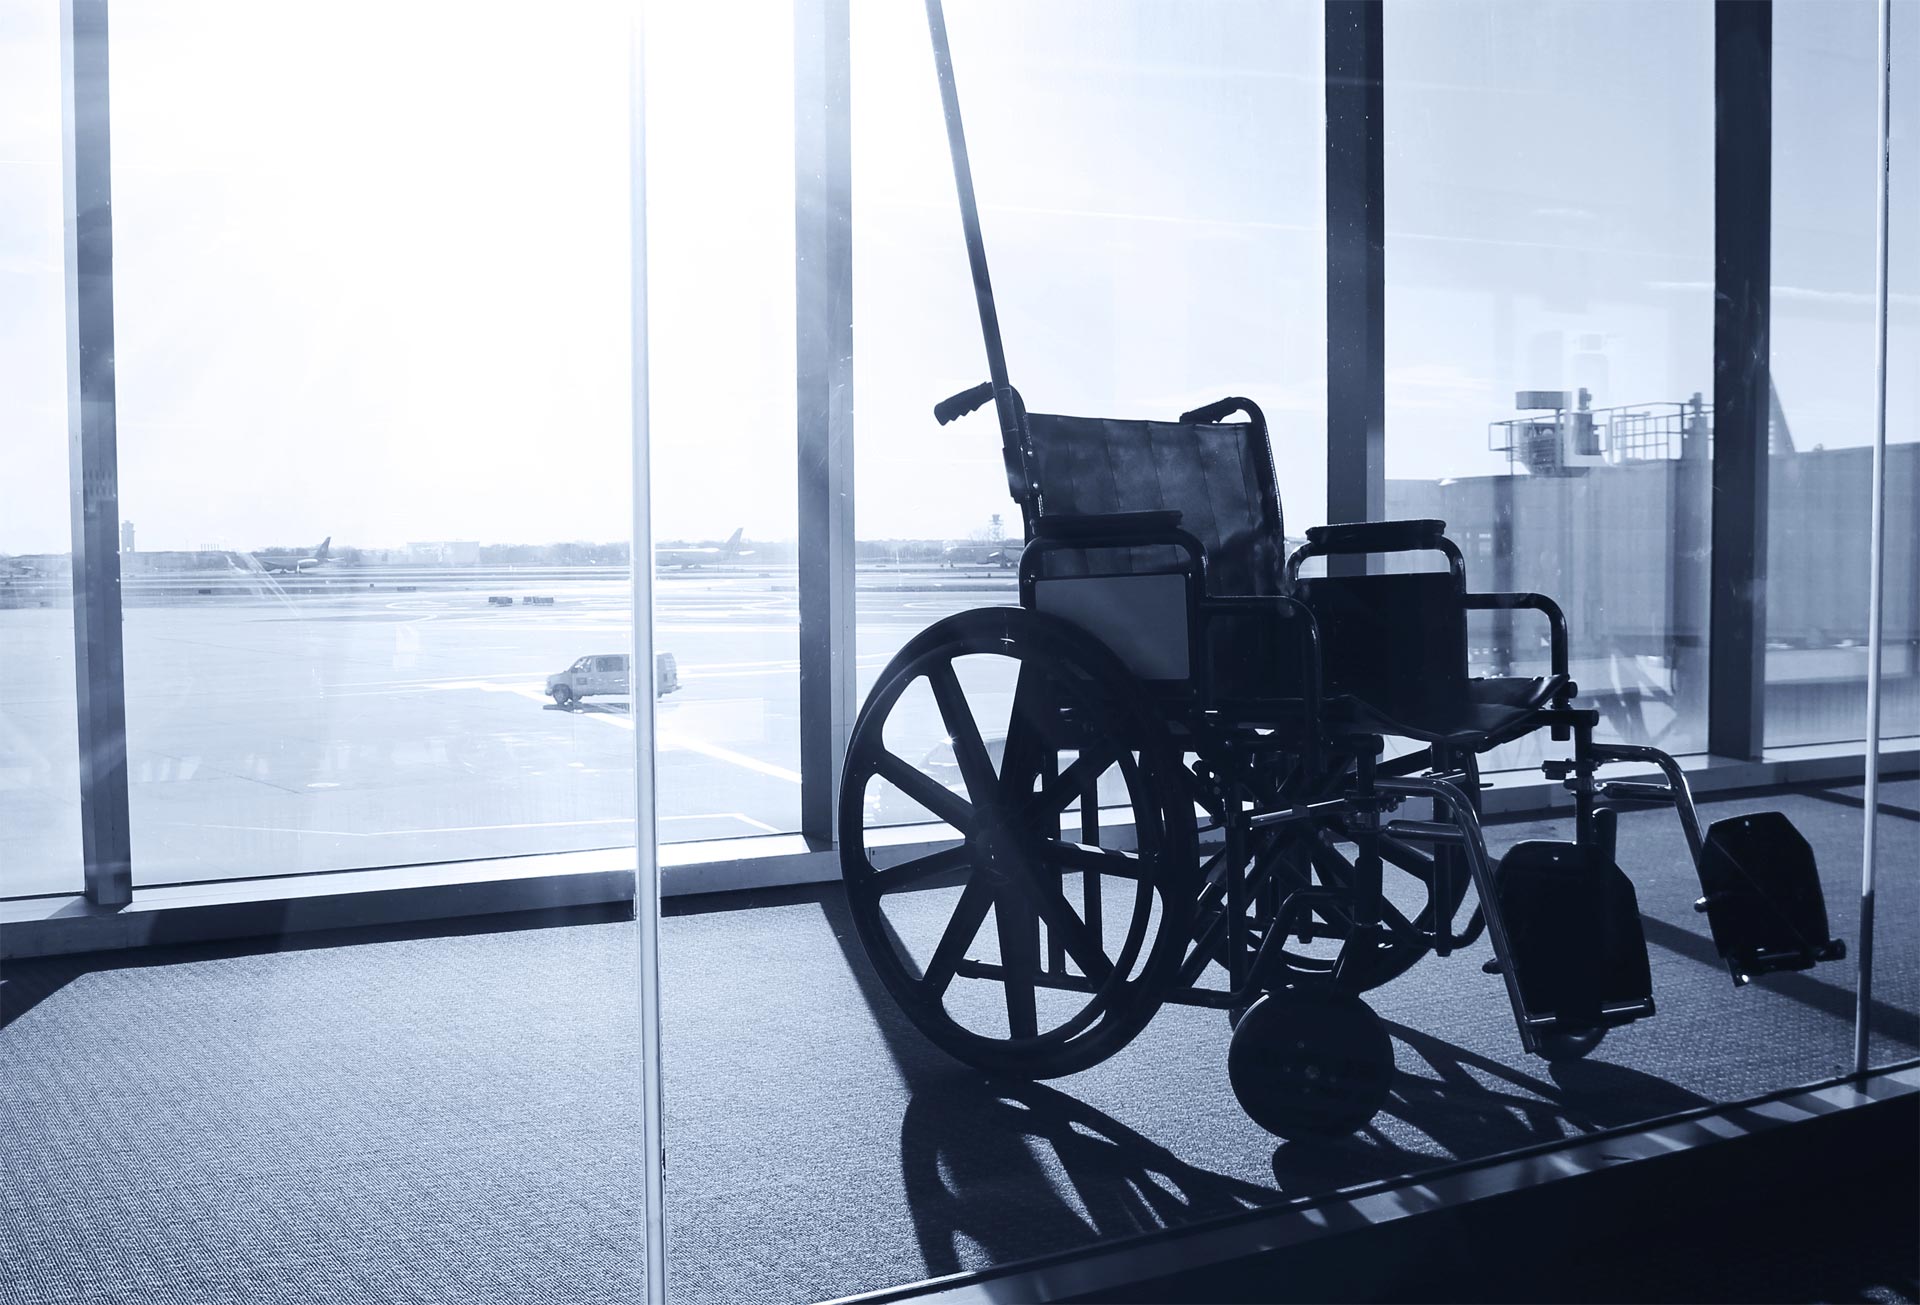 Investigadores israelí crearon esta innovación que permite movilidad segura a los discapacitados